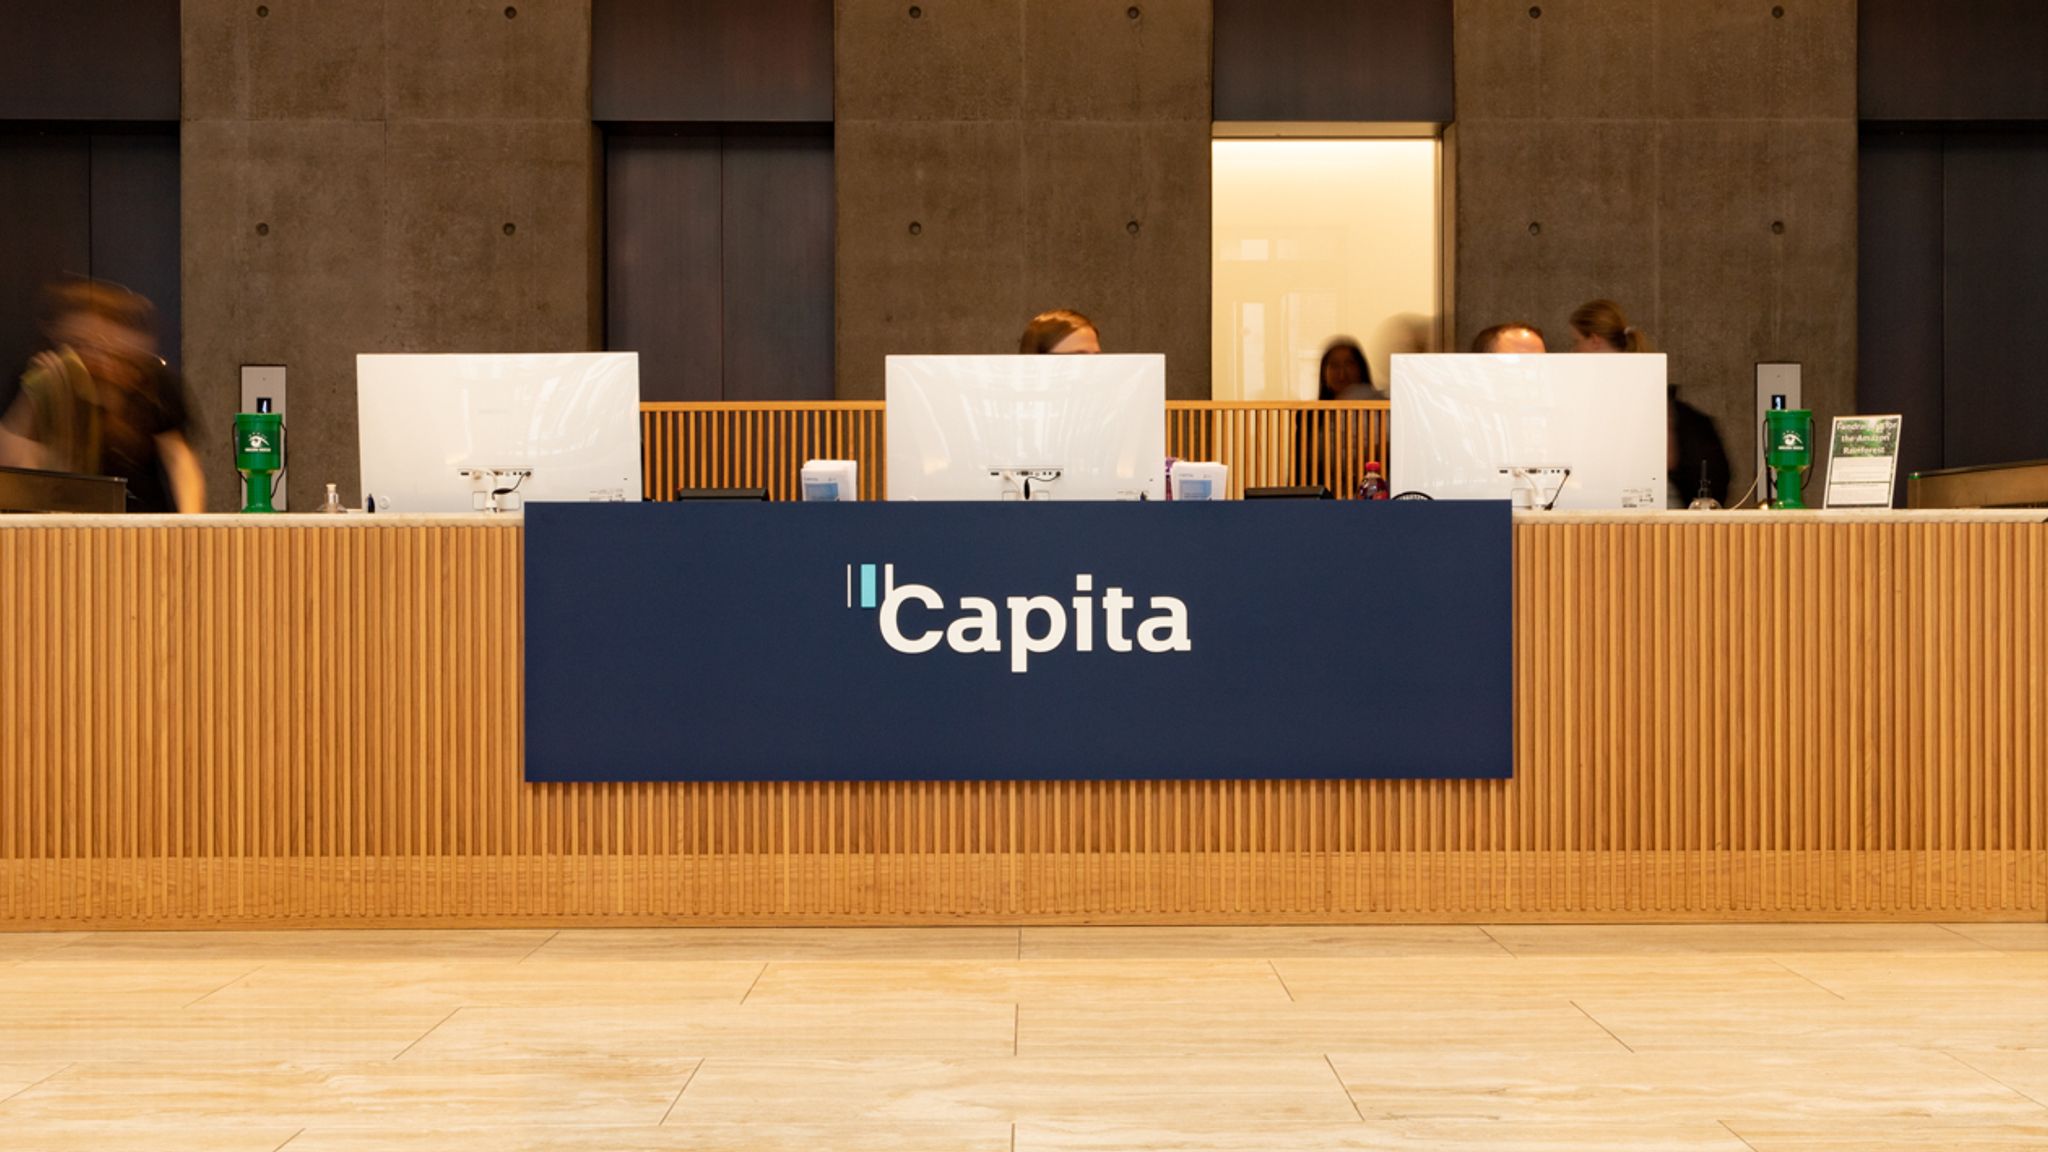 Capita company secretarial services jobs